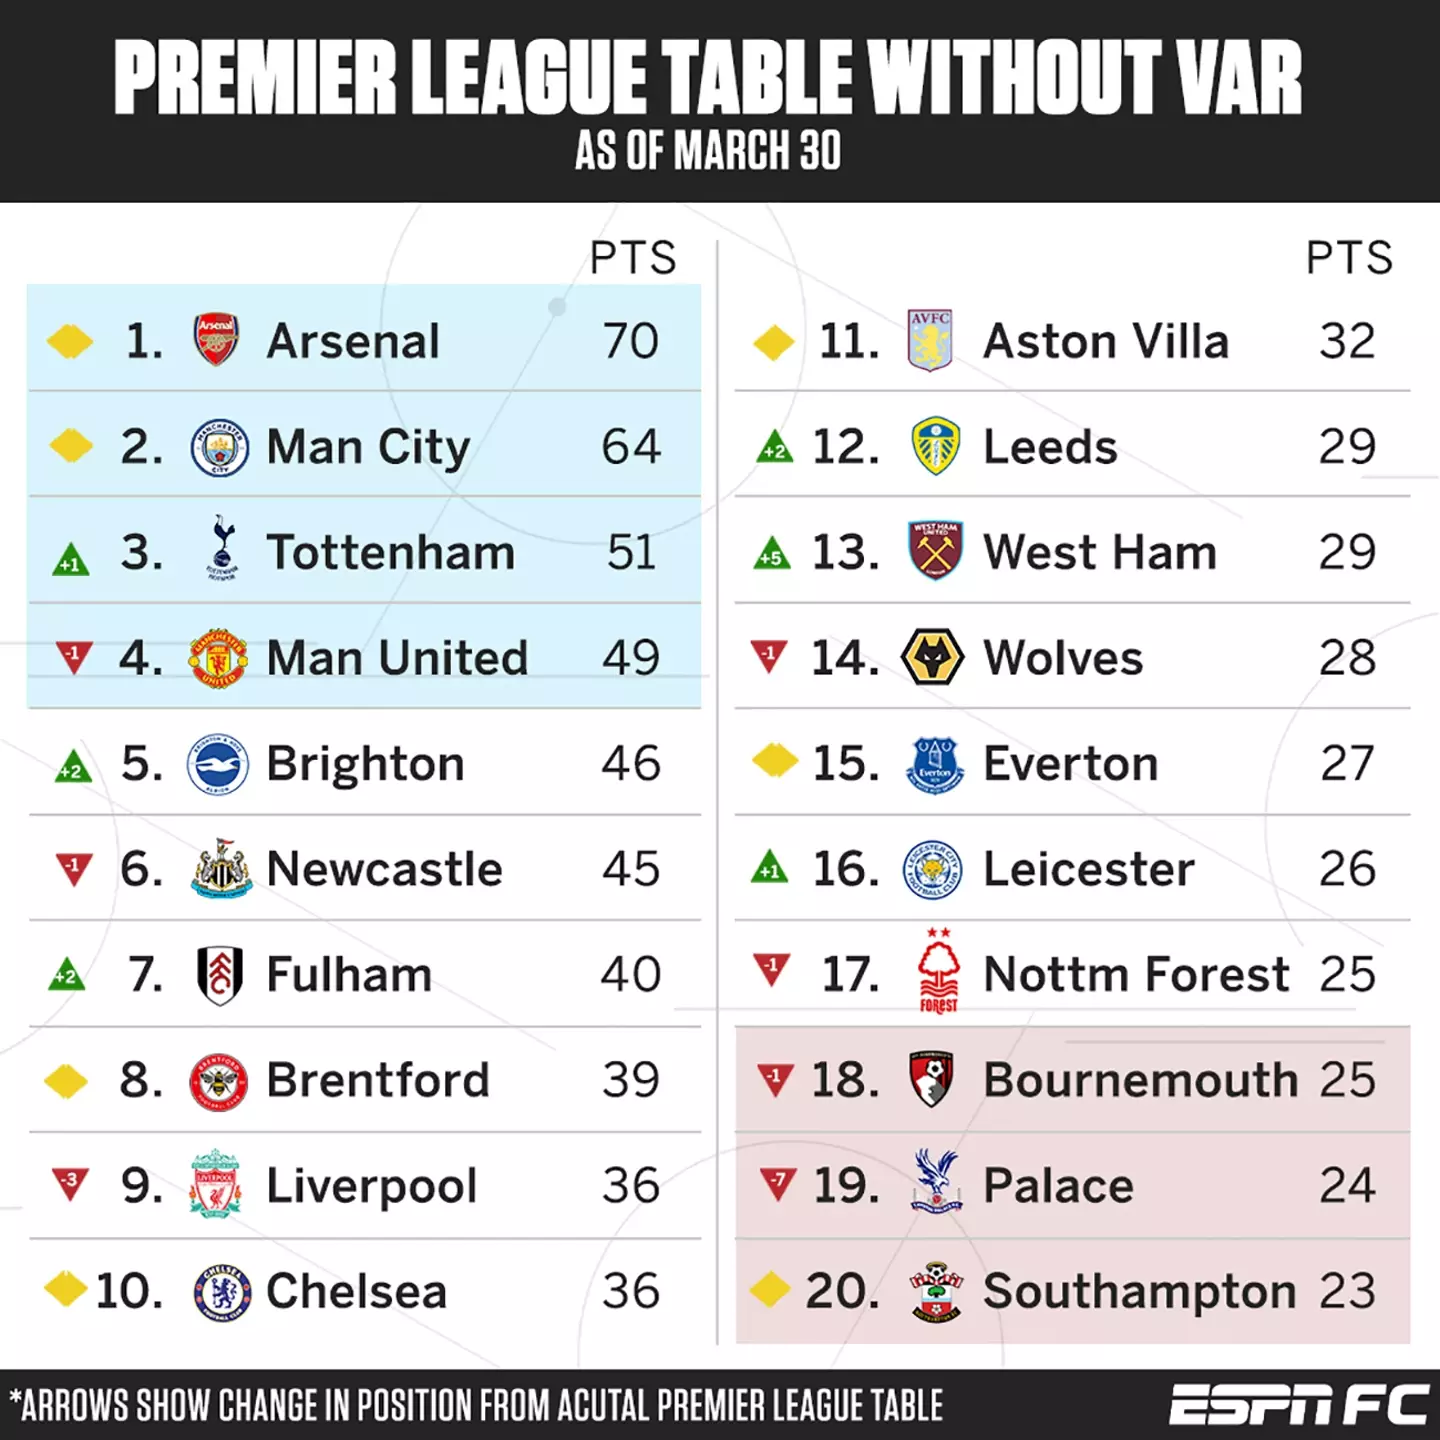 The Premier League table without VAR. Image credit: ESPN